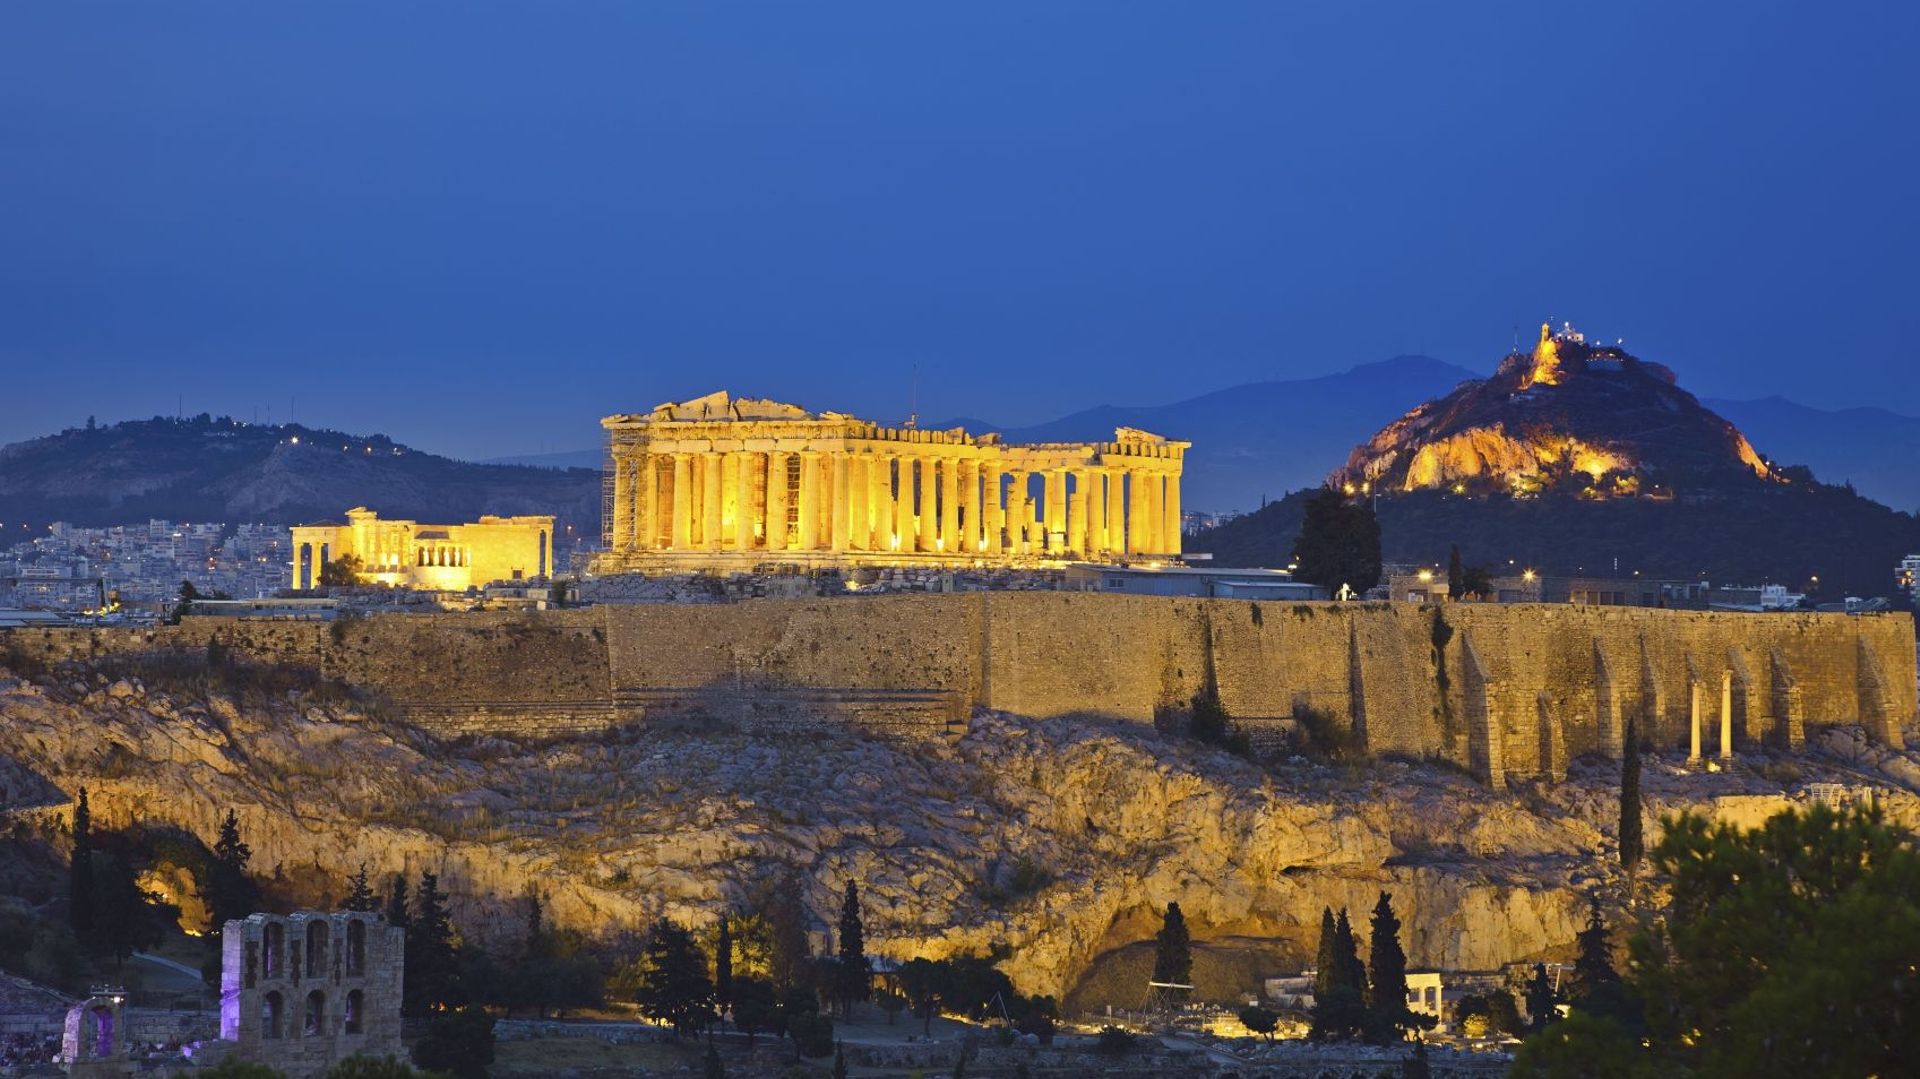 Depuis la création de ce service en 1976, un vaste plan de restauration des monuments de l'Acropole, dont le Parthénon, est en cours, financé surtout par l'Union européenne